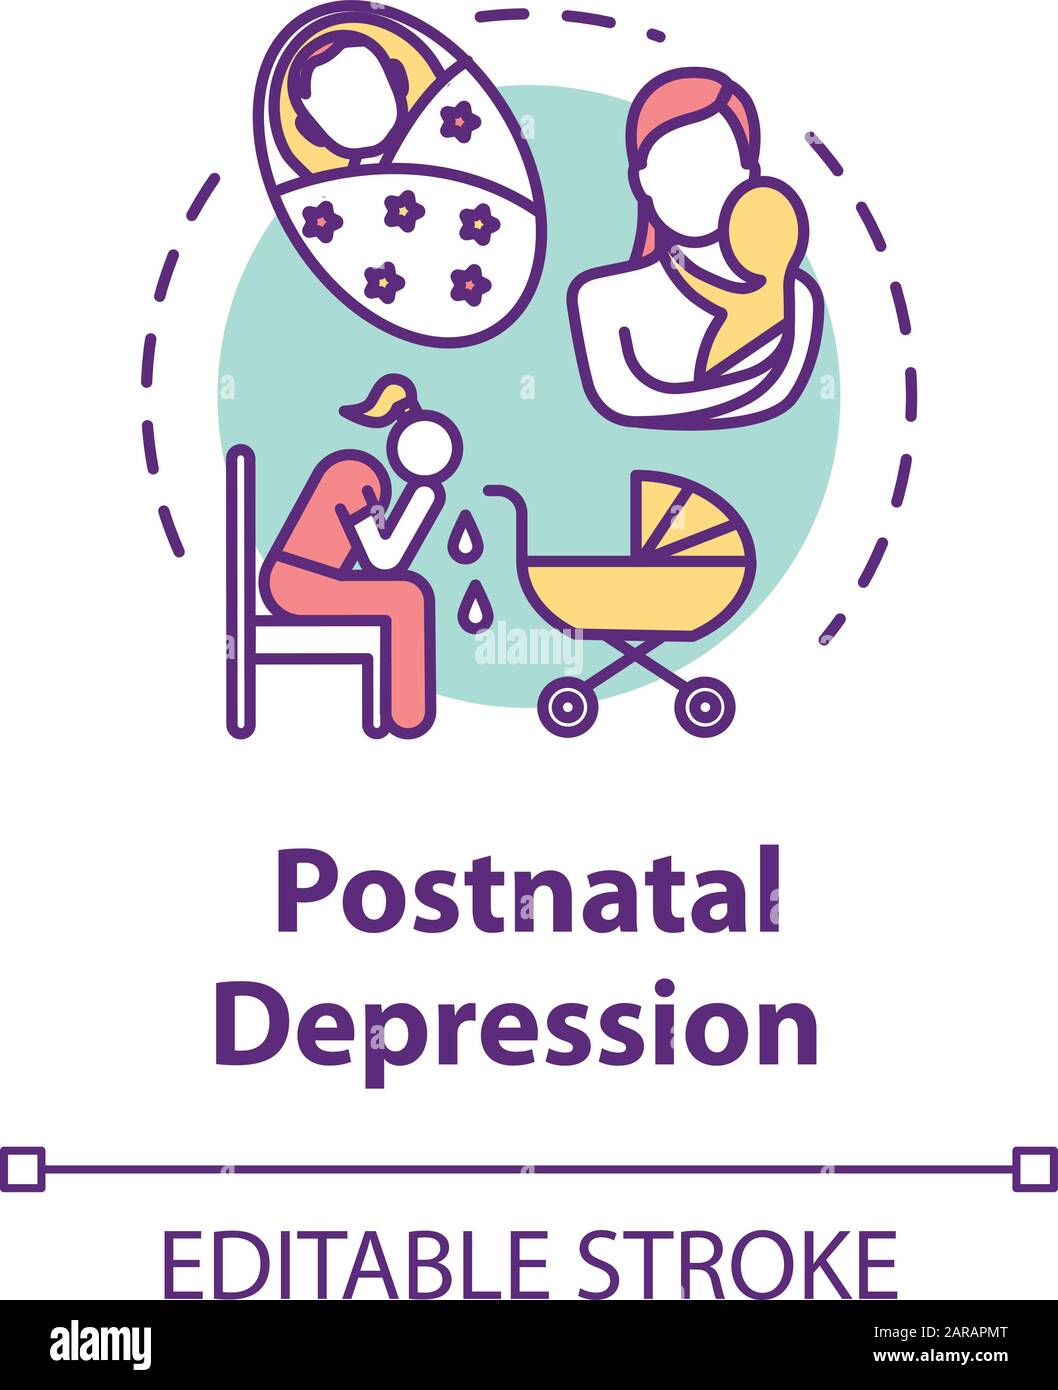 Icona del concetto di depressione postnatale. Depressione post-partum. PPD. Giovane madre stressata. Illustrazione della linea sottile dell'idea di disturbo dell'umore. Outli isolati da vettori Illustrazione Vettoriale